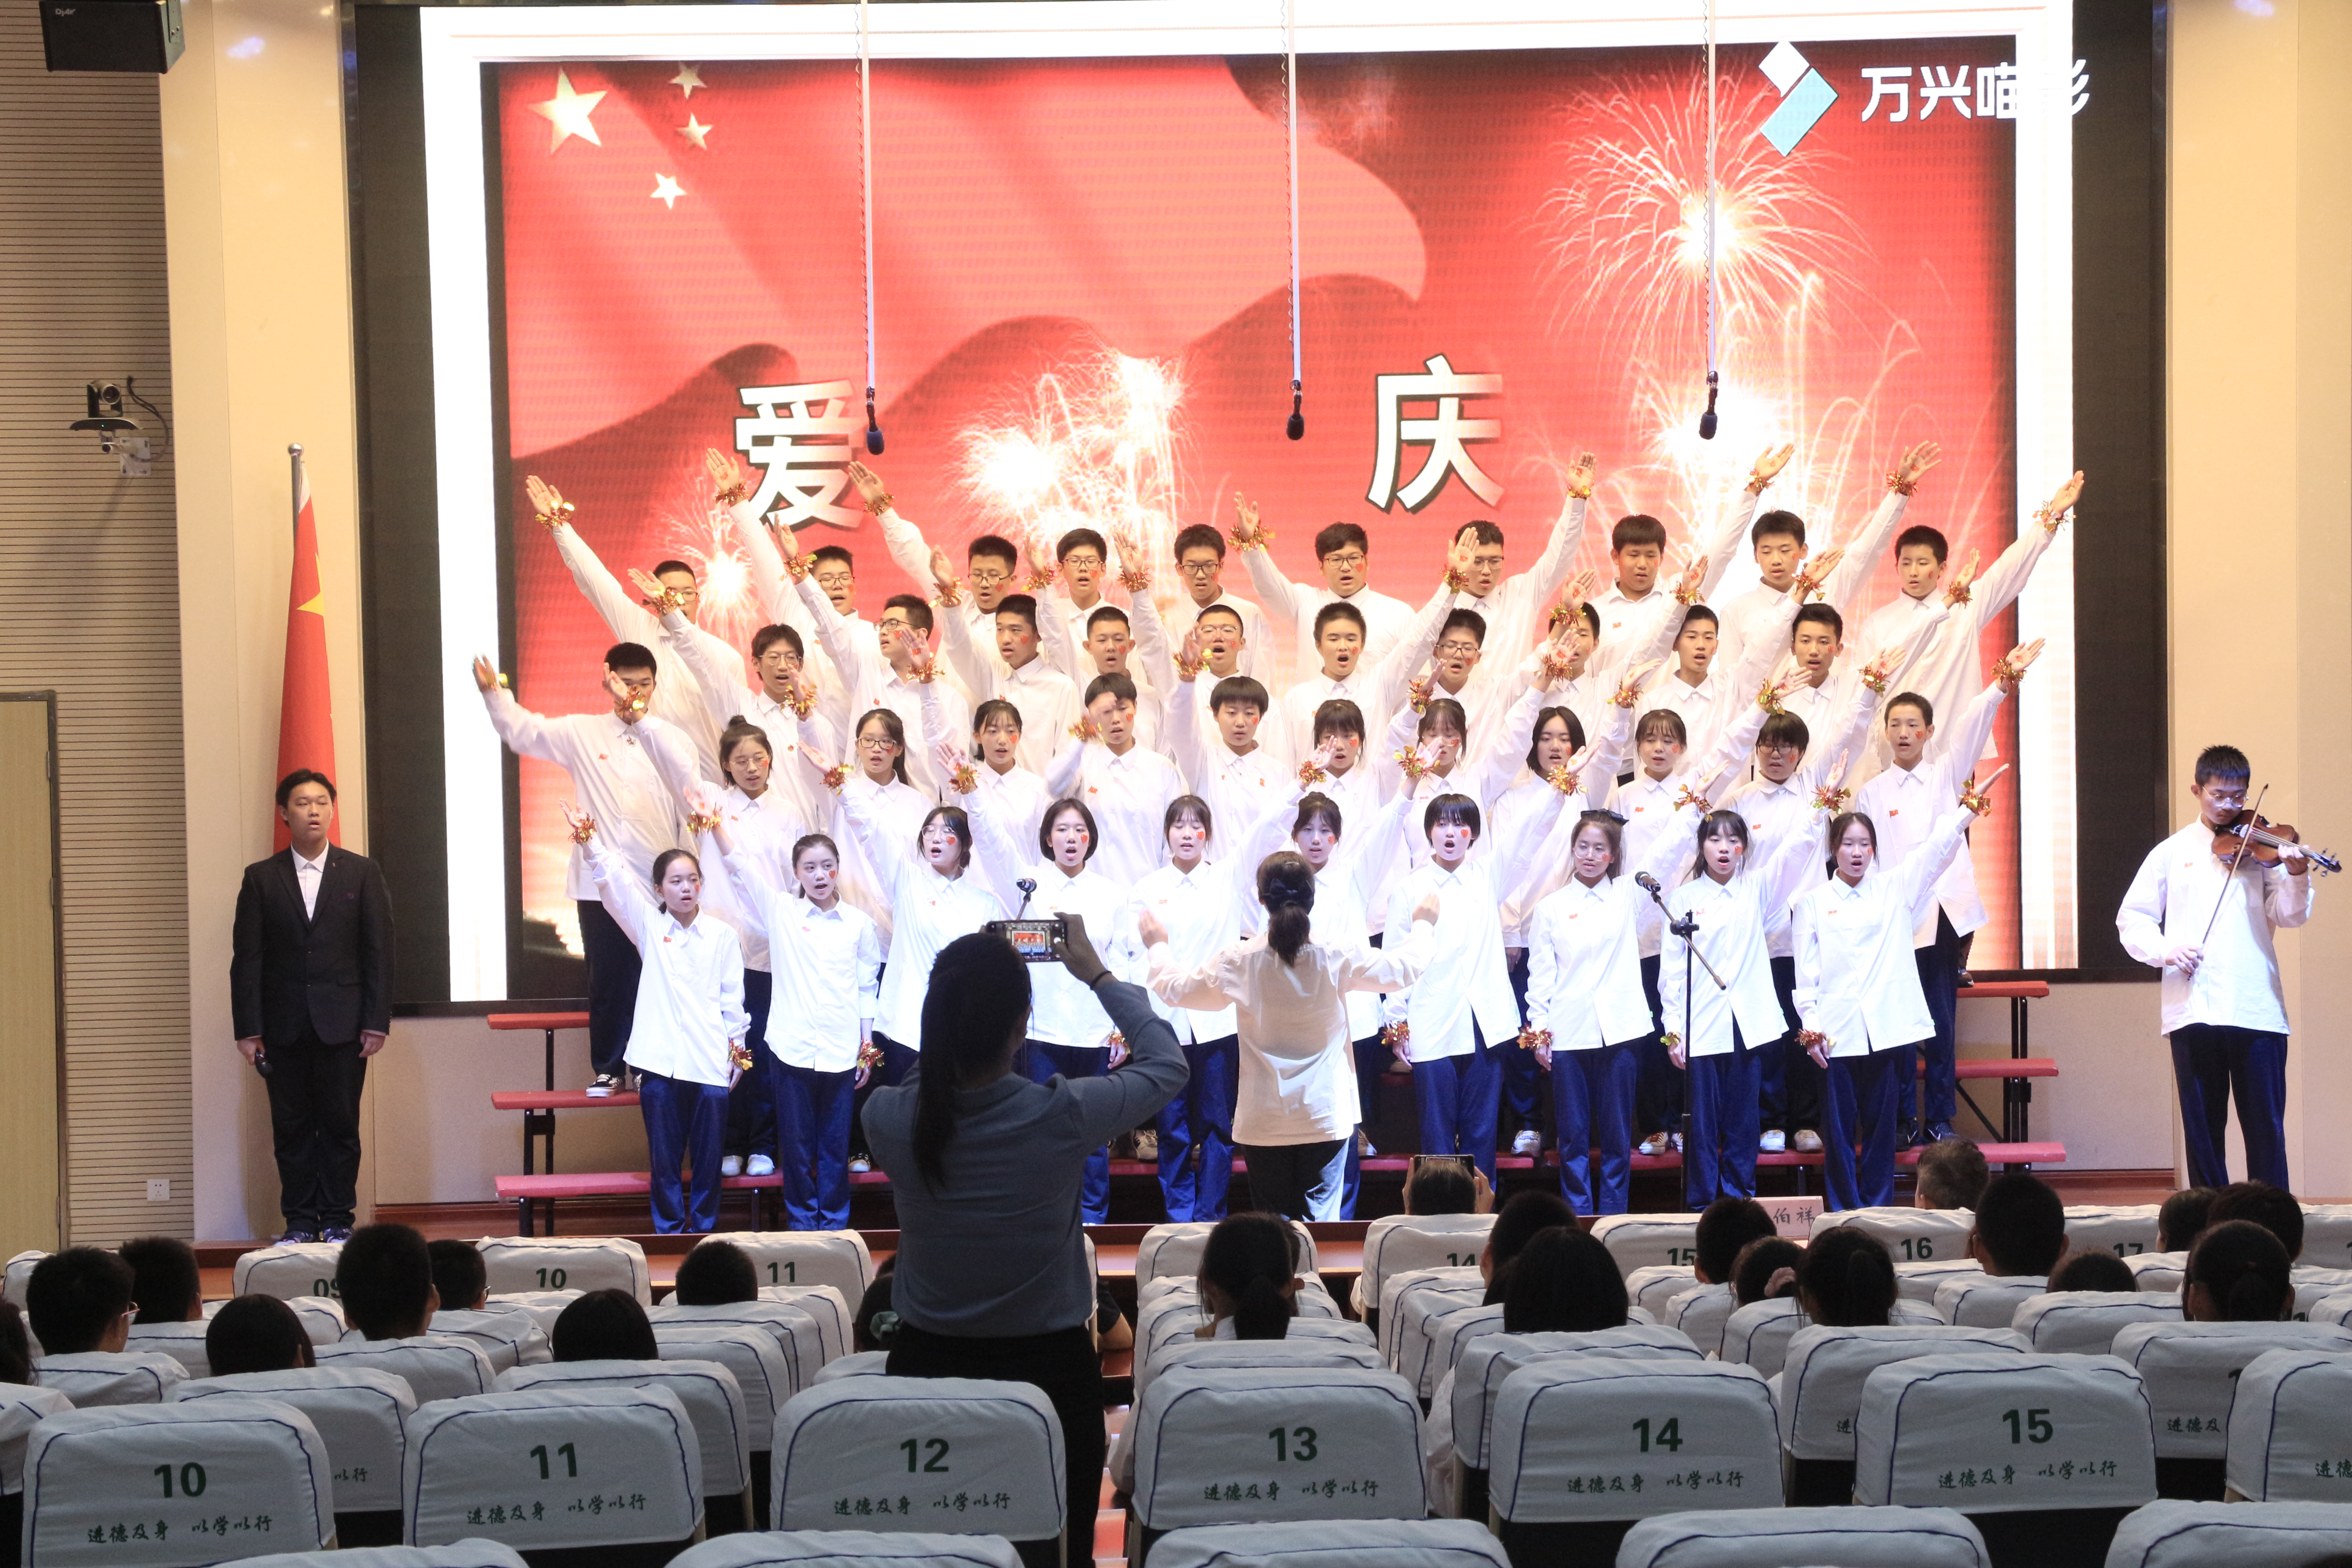 传承红色文化 济南德润高级中学举办第四届班级合唱节